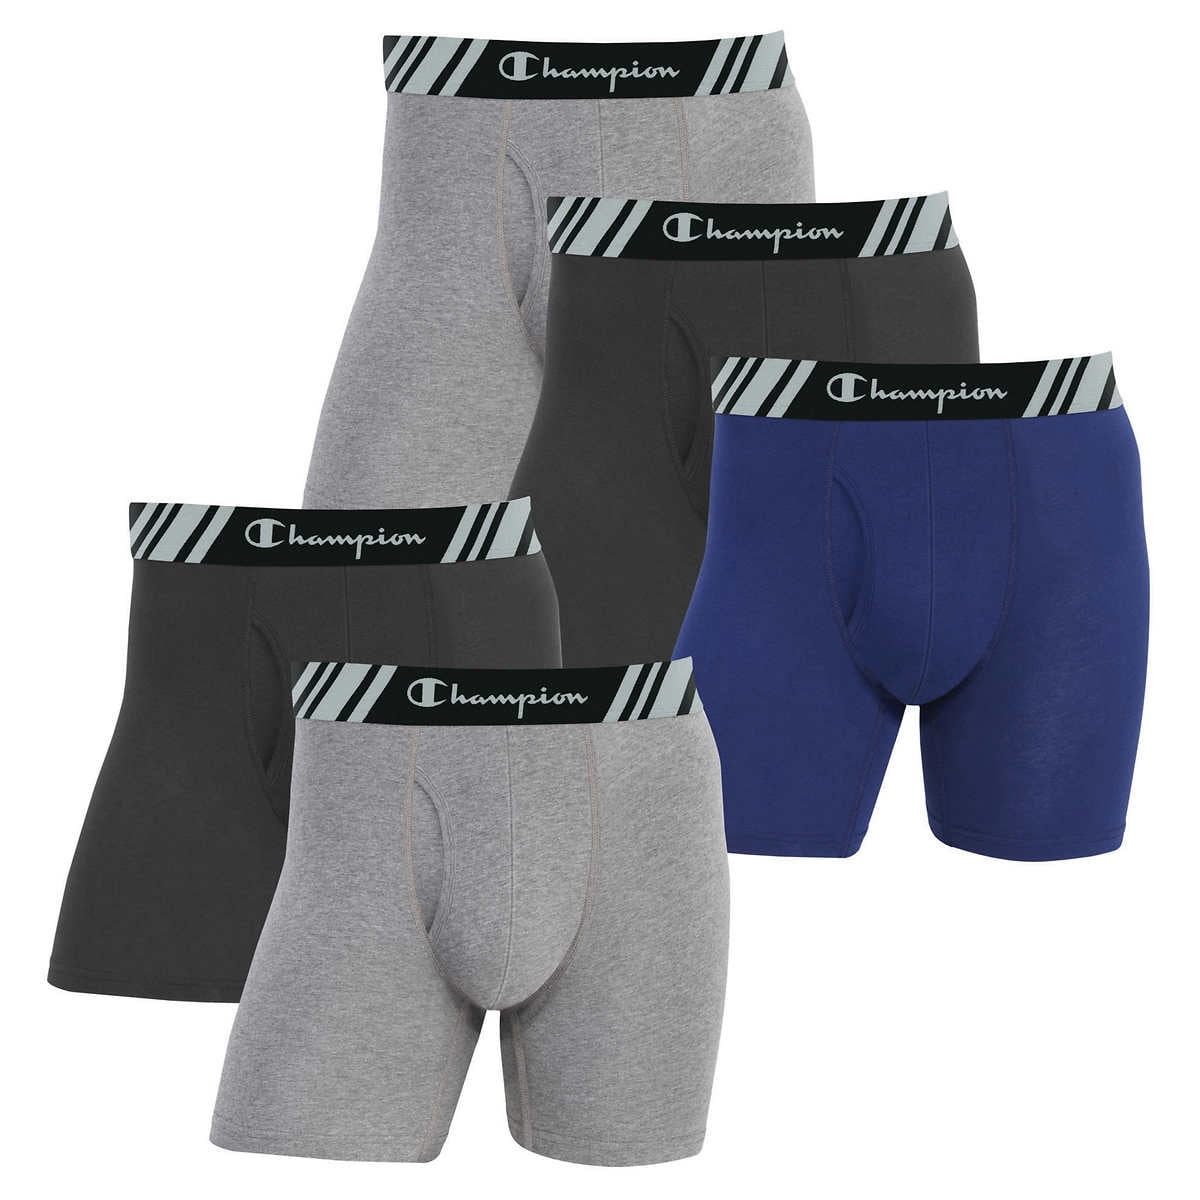 Black Champion UNDERWEAR Size XL - Buy Online, Underwear & Socks